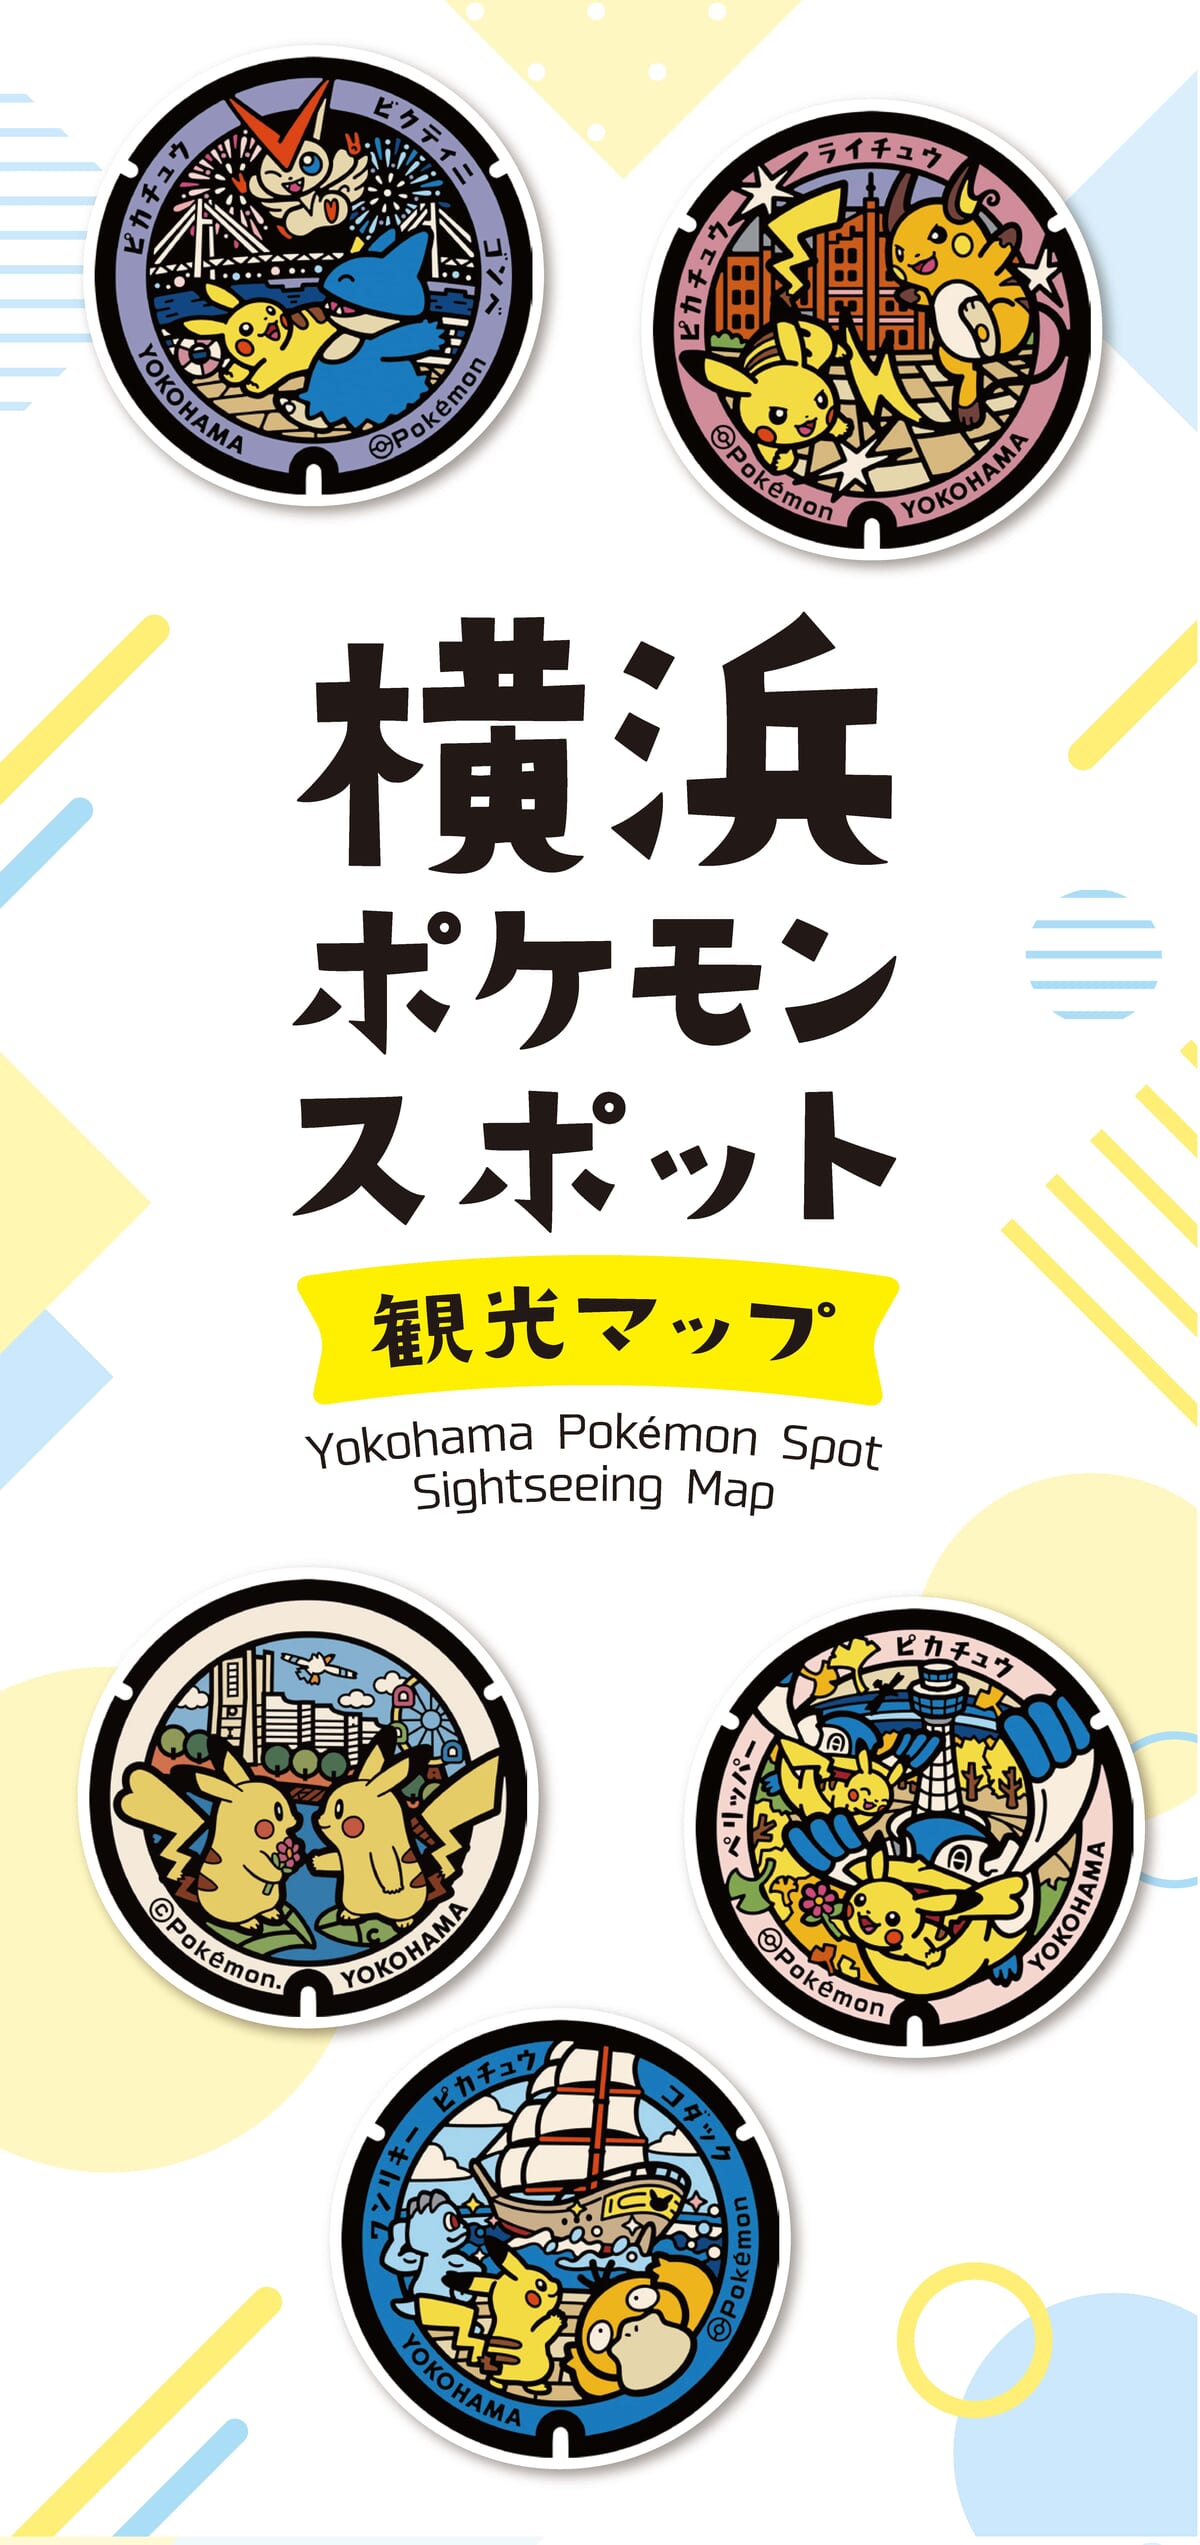 「横浜ポケモンスポット観光マップ」の配布